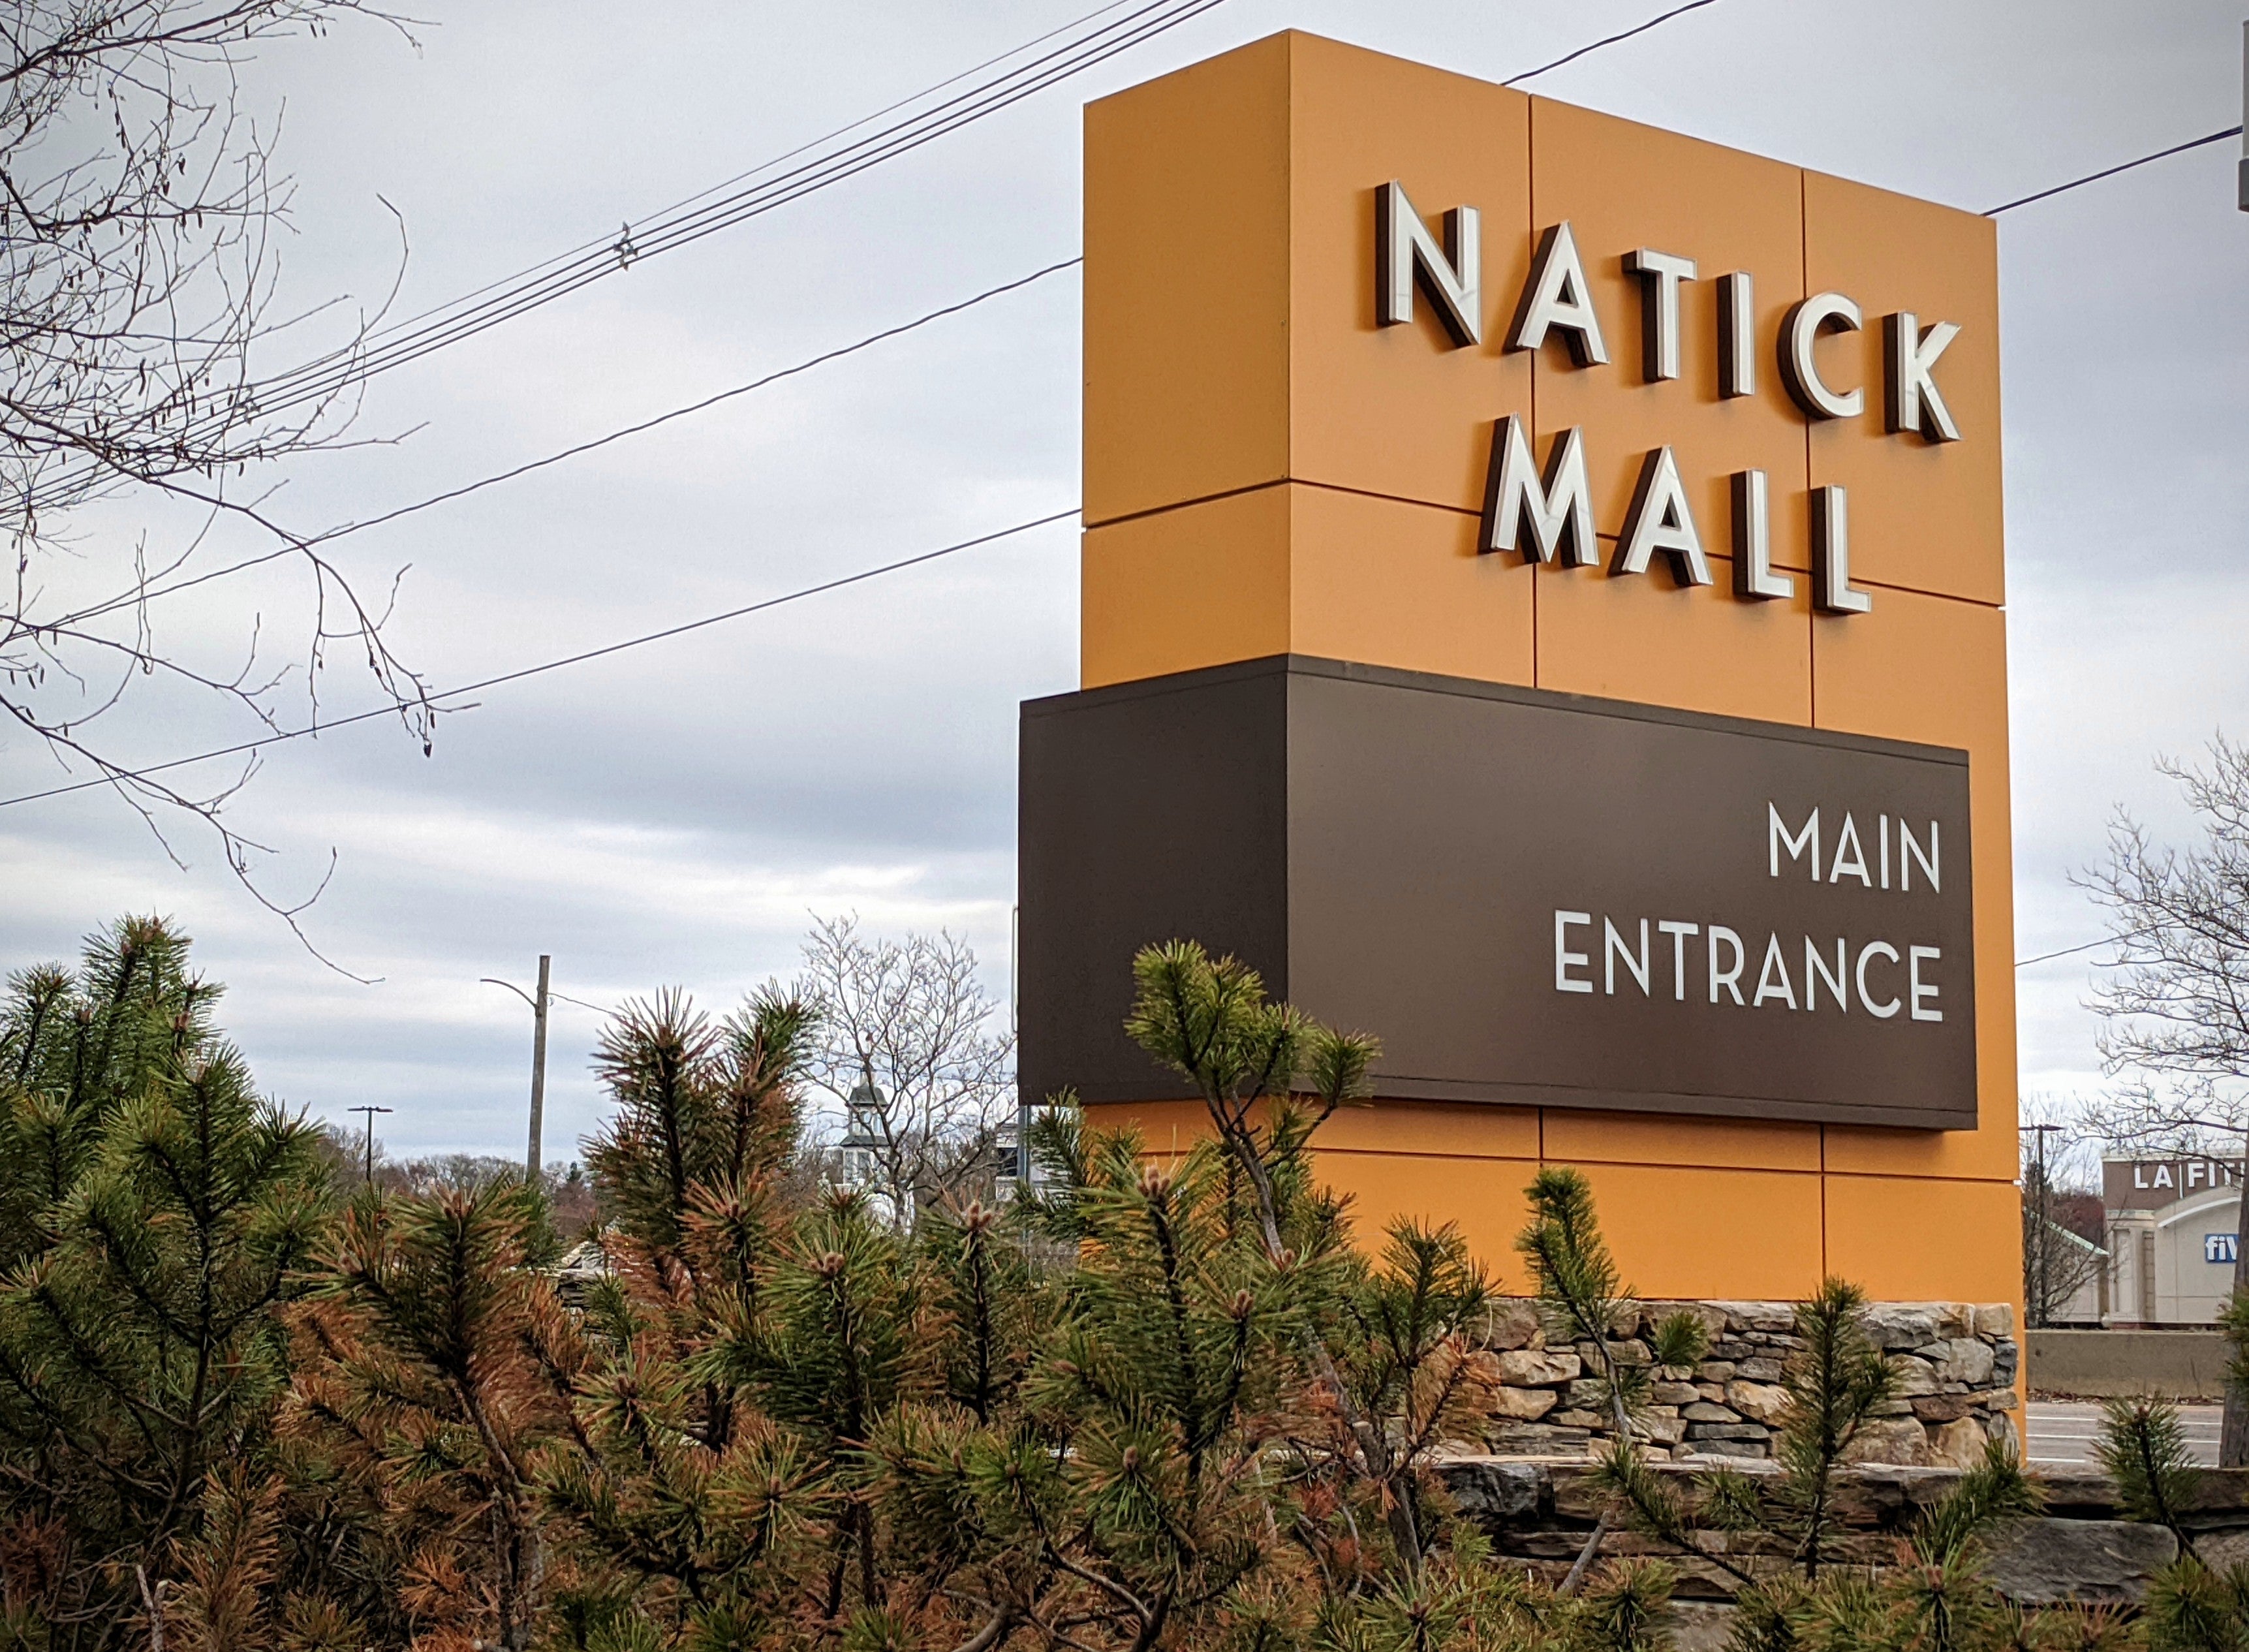 Natick Mall in Natick, MA